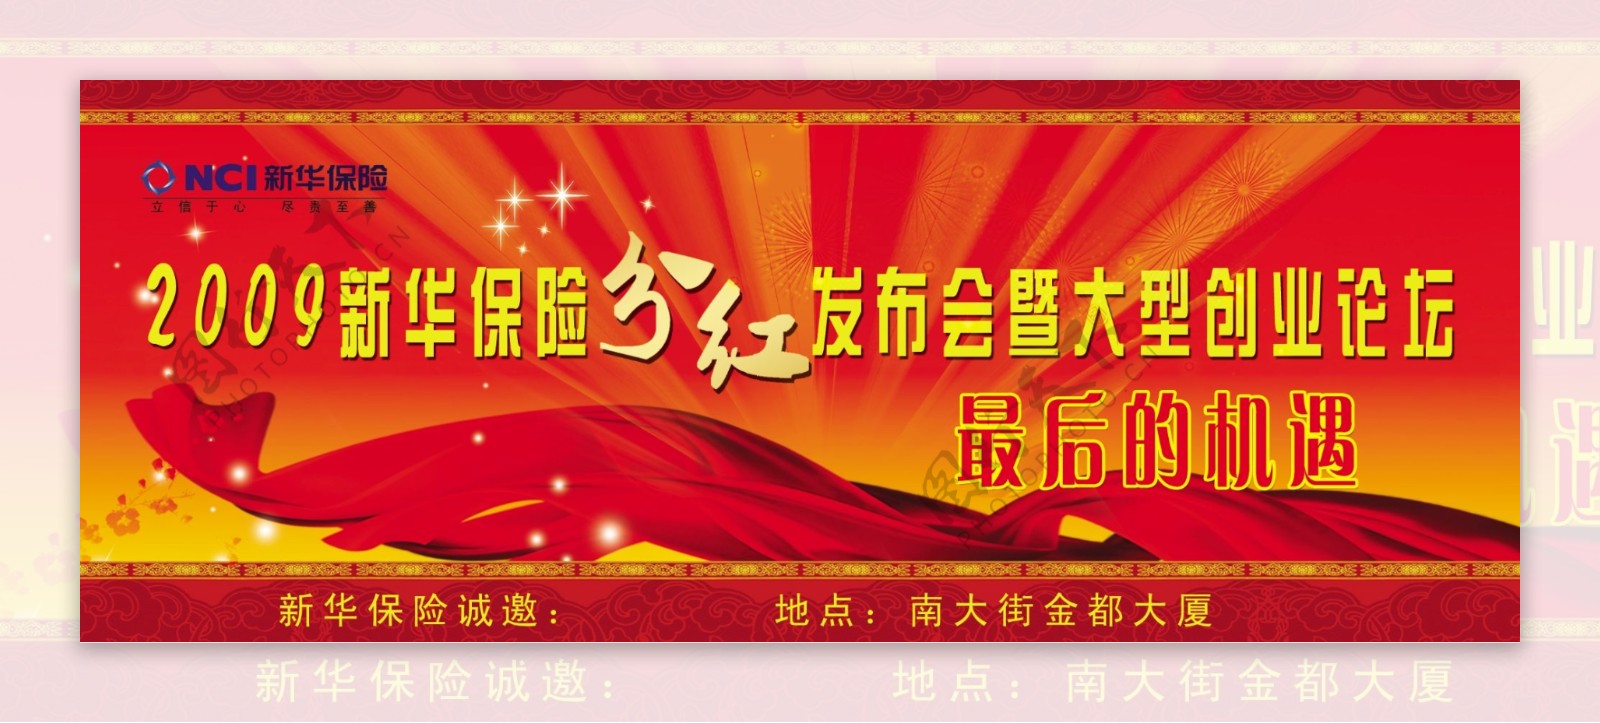 2009年新华保险分红发布会图片